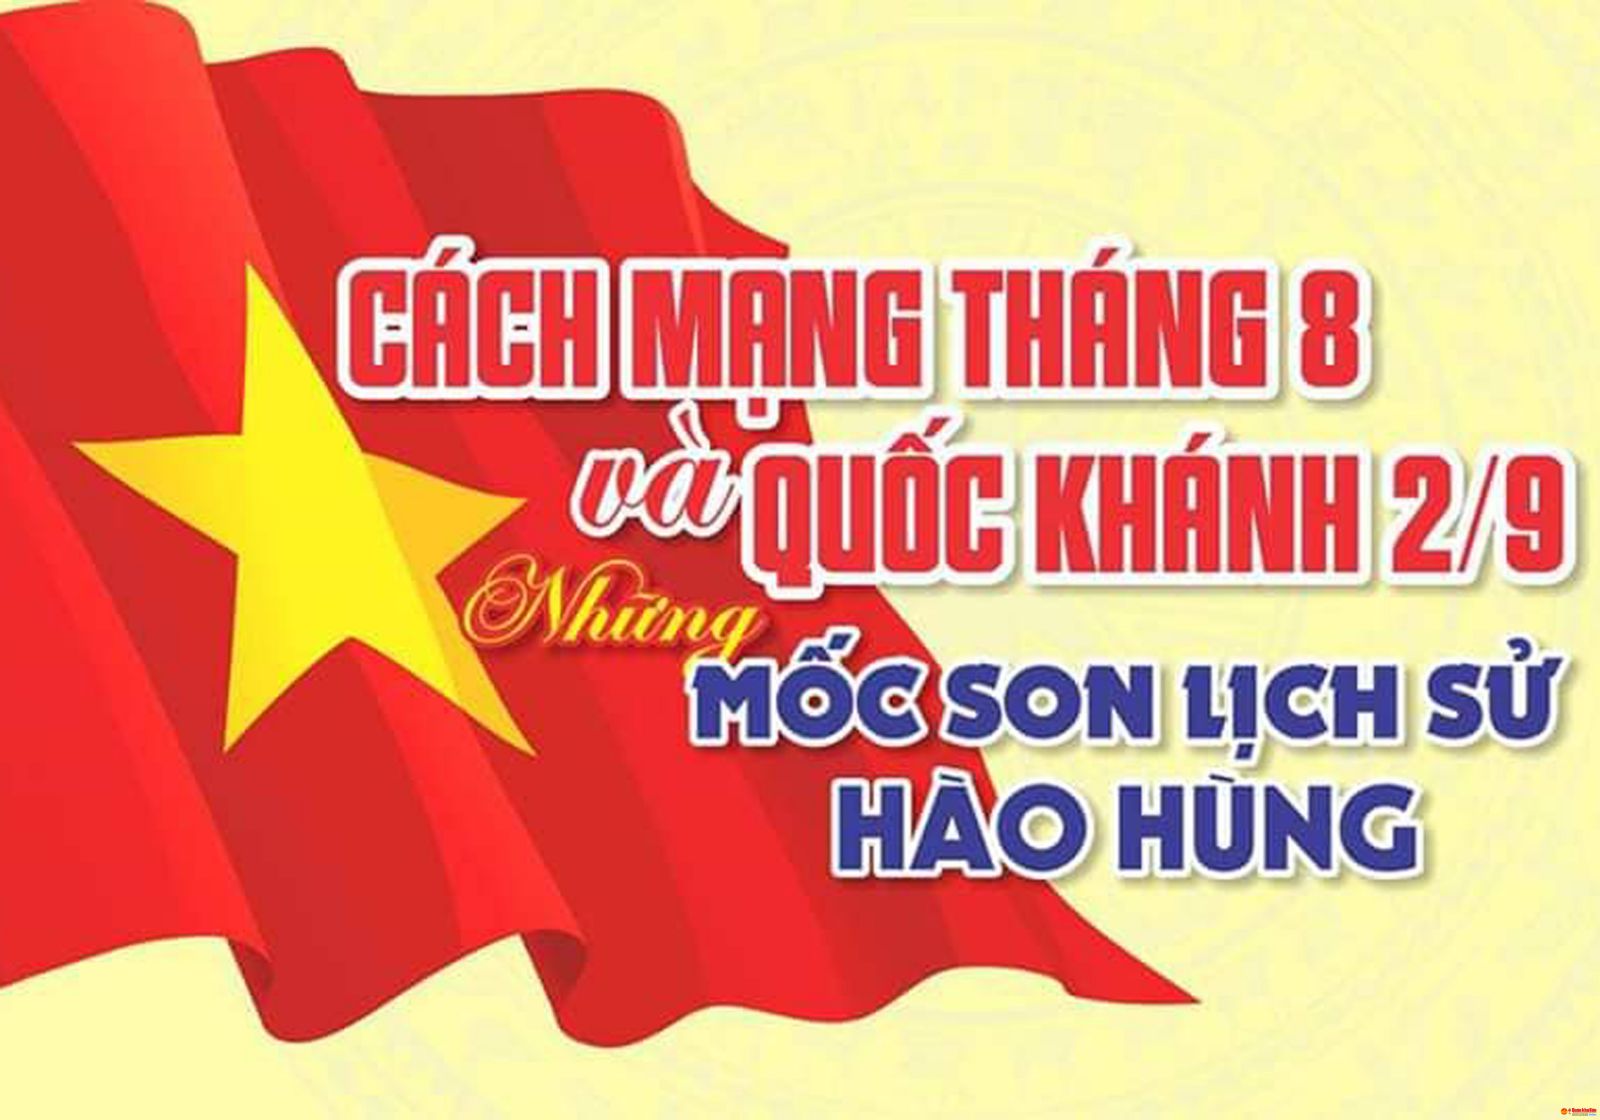 Cách mạng Tháng Tám và Quốc khánh 2/9, những mốc son lịch sử hào hùng của dân tộc Việt Nam